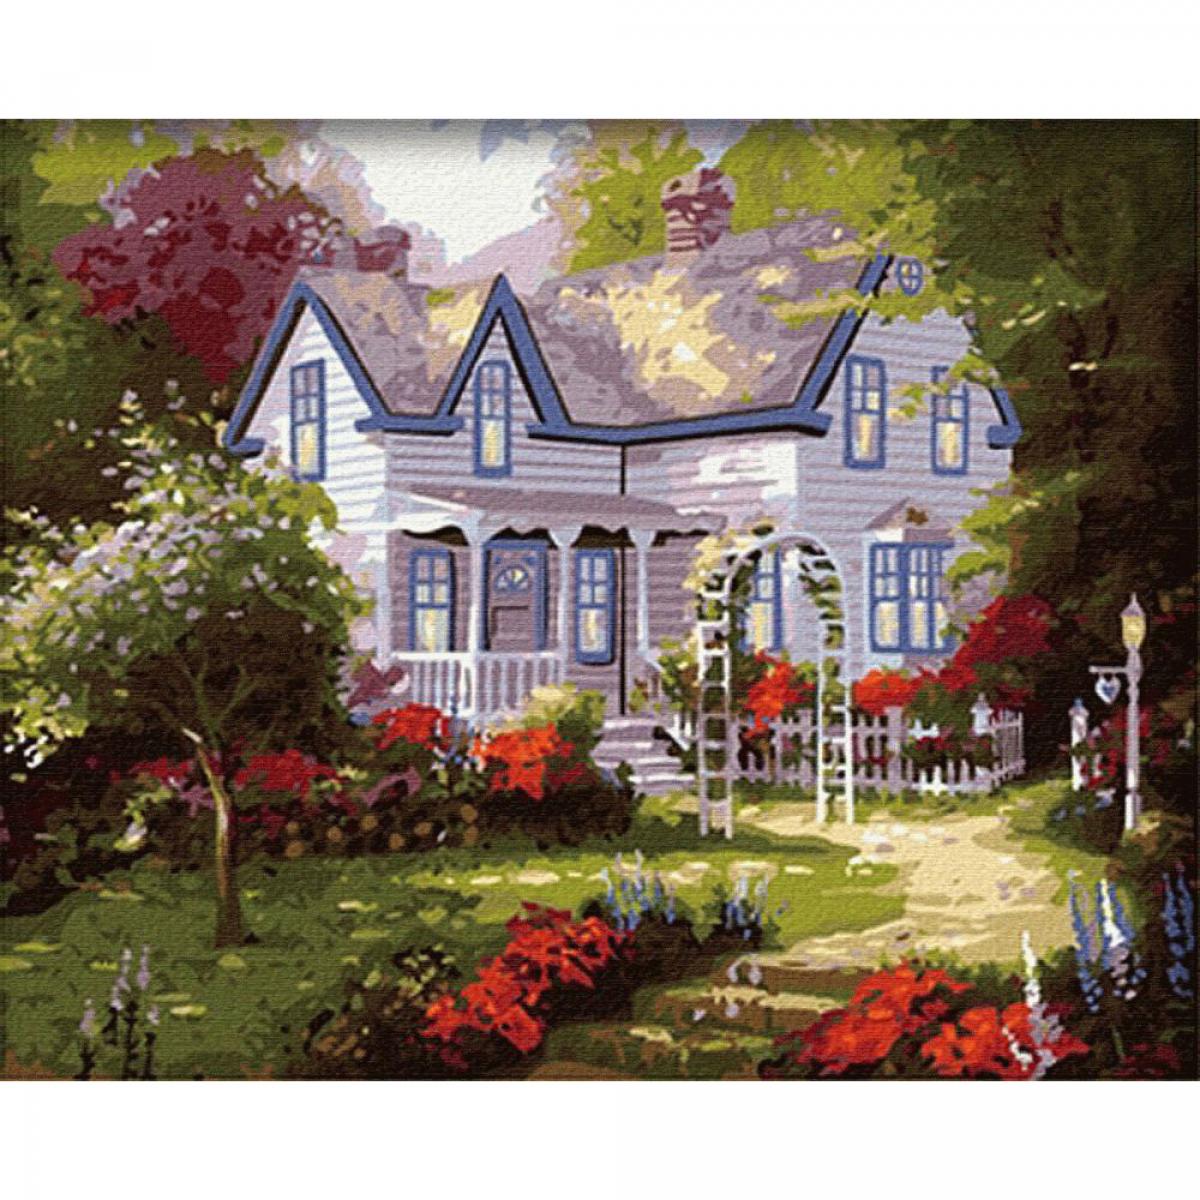 Картина по номерам Уютный дом Томас Кинкейд купить недорого с доставкой по Украине - ИМ ДОМ ИГРЫ